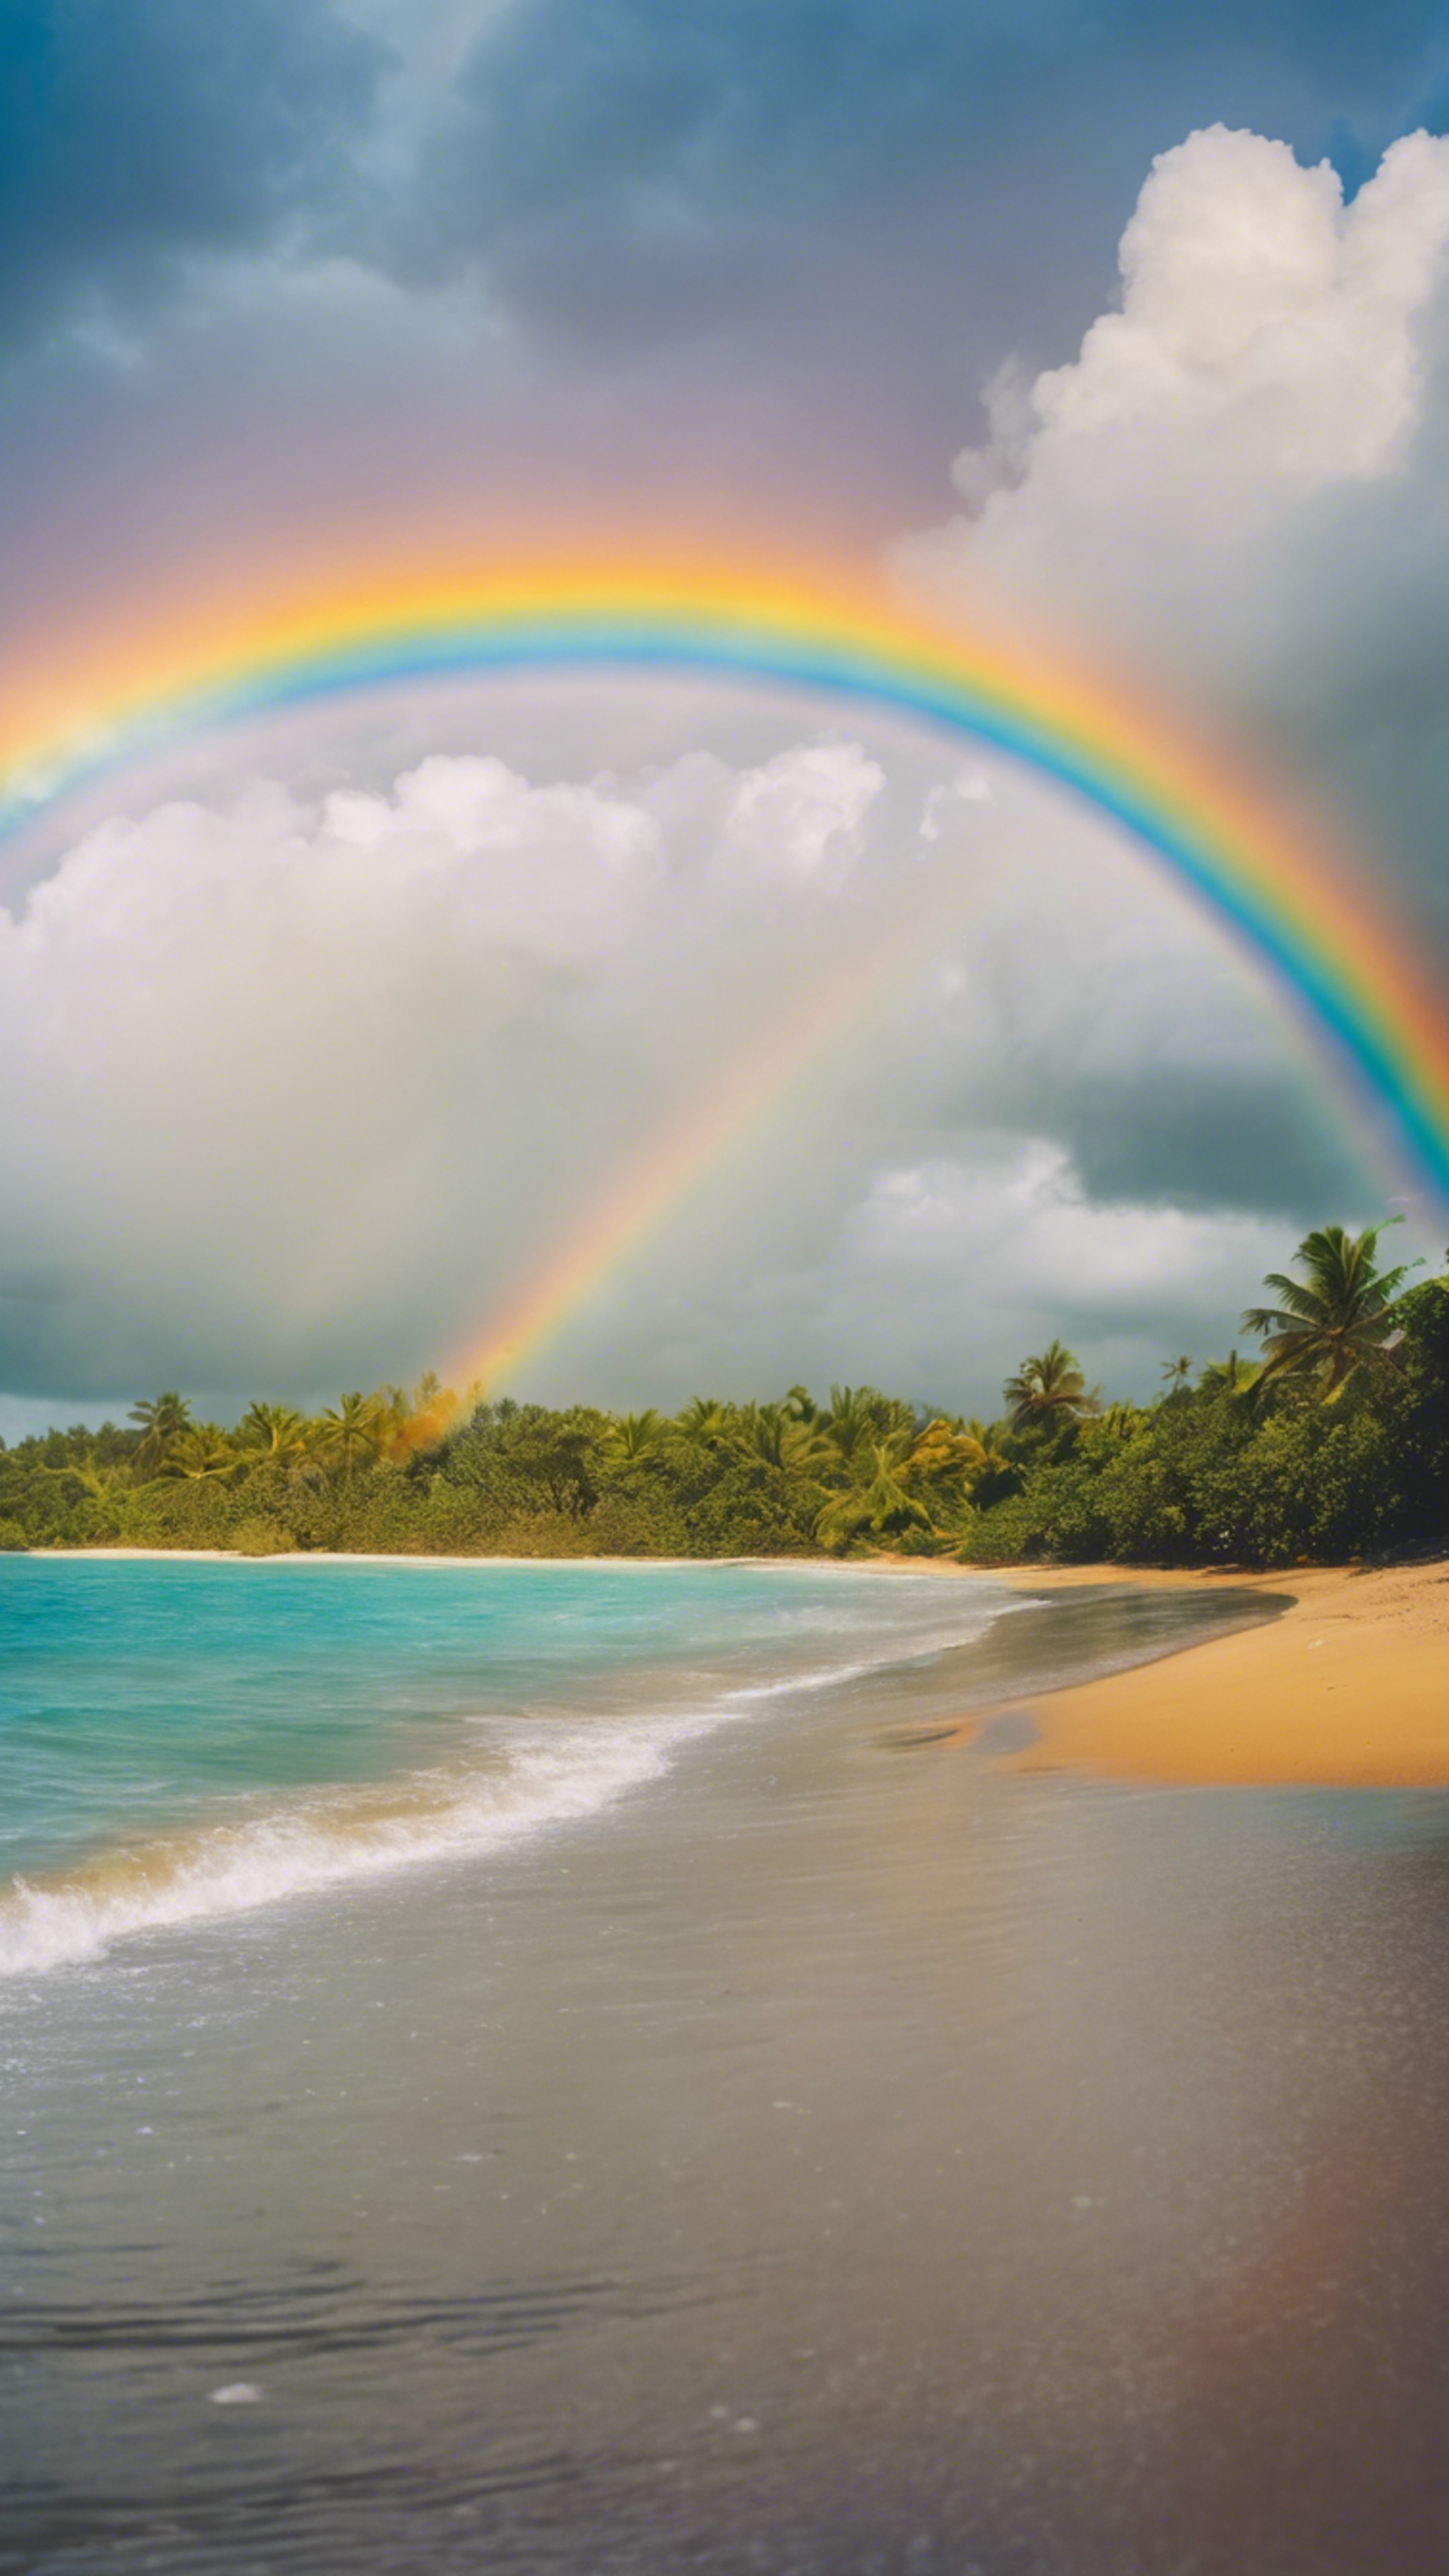 Vivid rainbow arcing across the sky after a rainfall at a tropical beach. Tapeta[d3854ca165cf432a9c18]